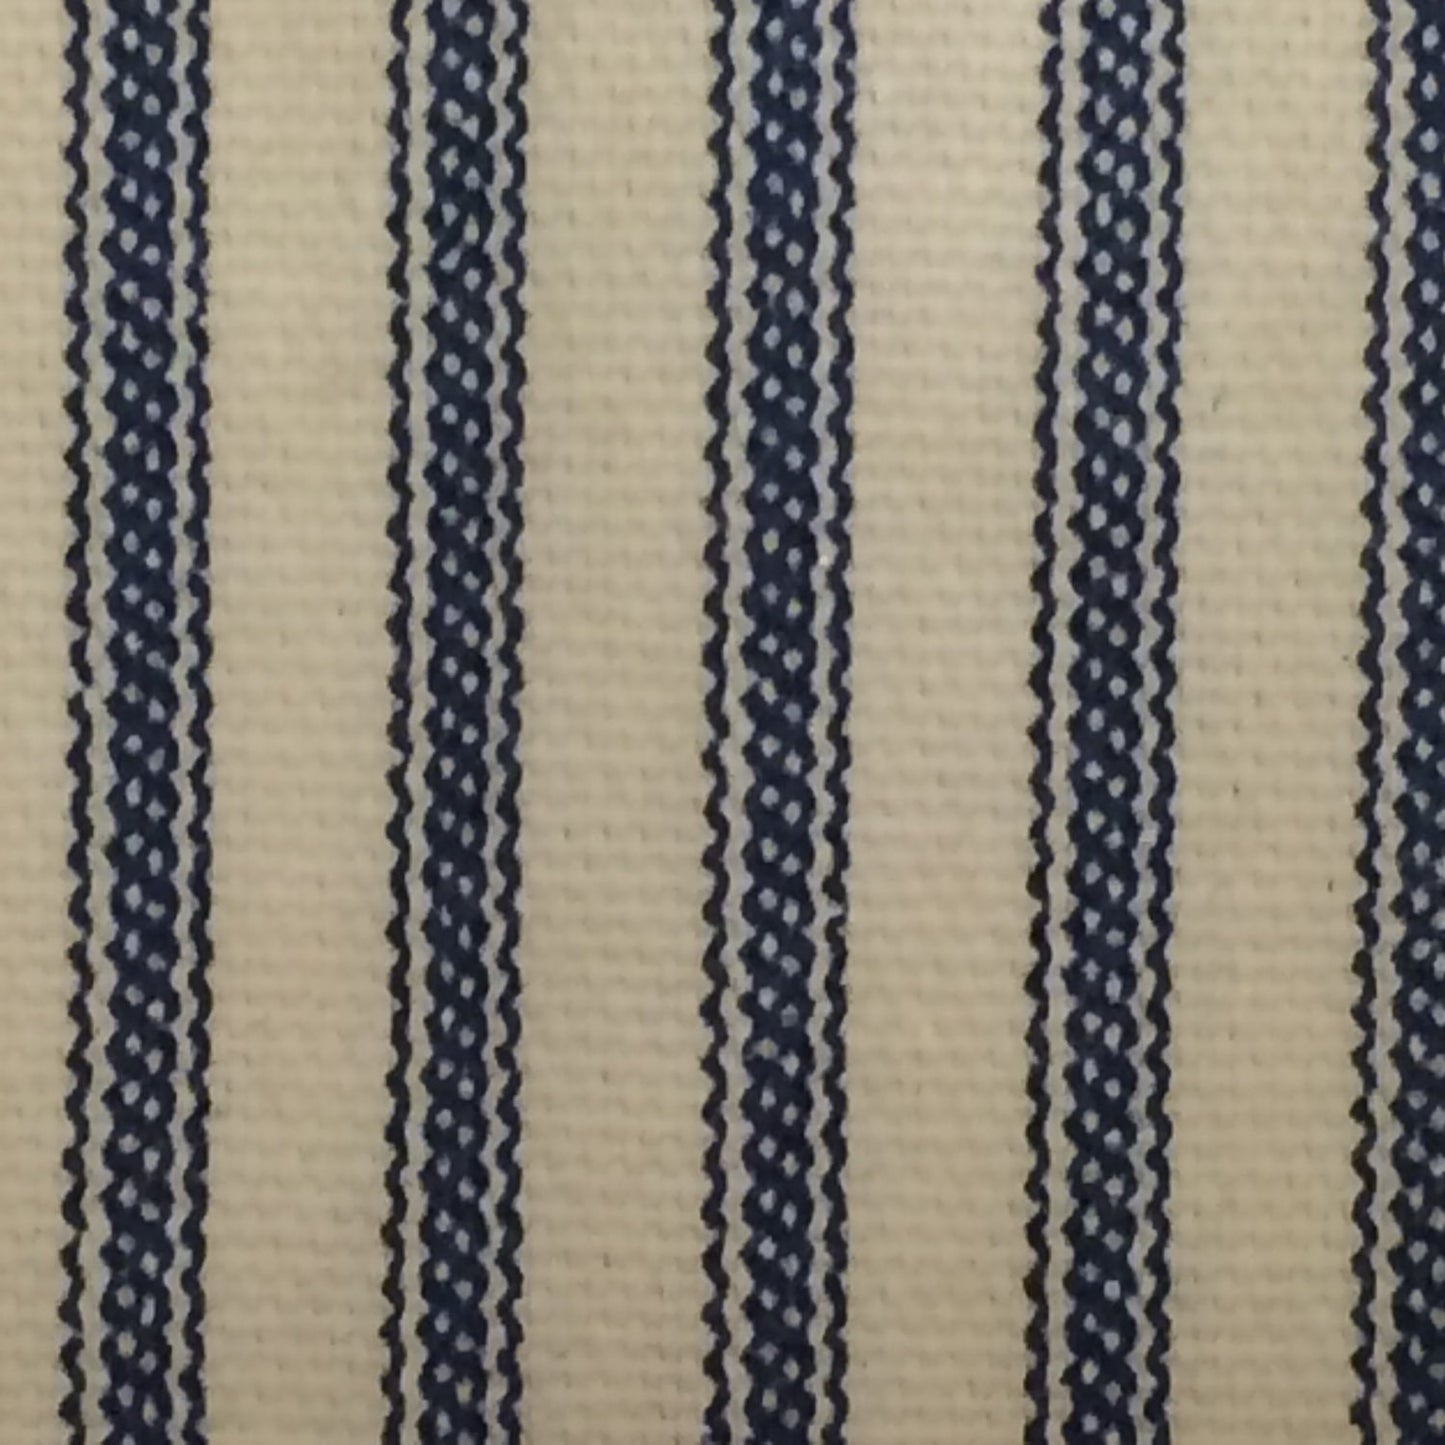 Ticking Stripe Duvet Cover Navy Blue